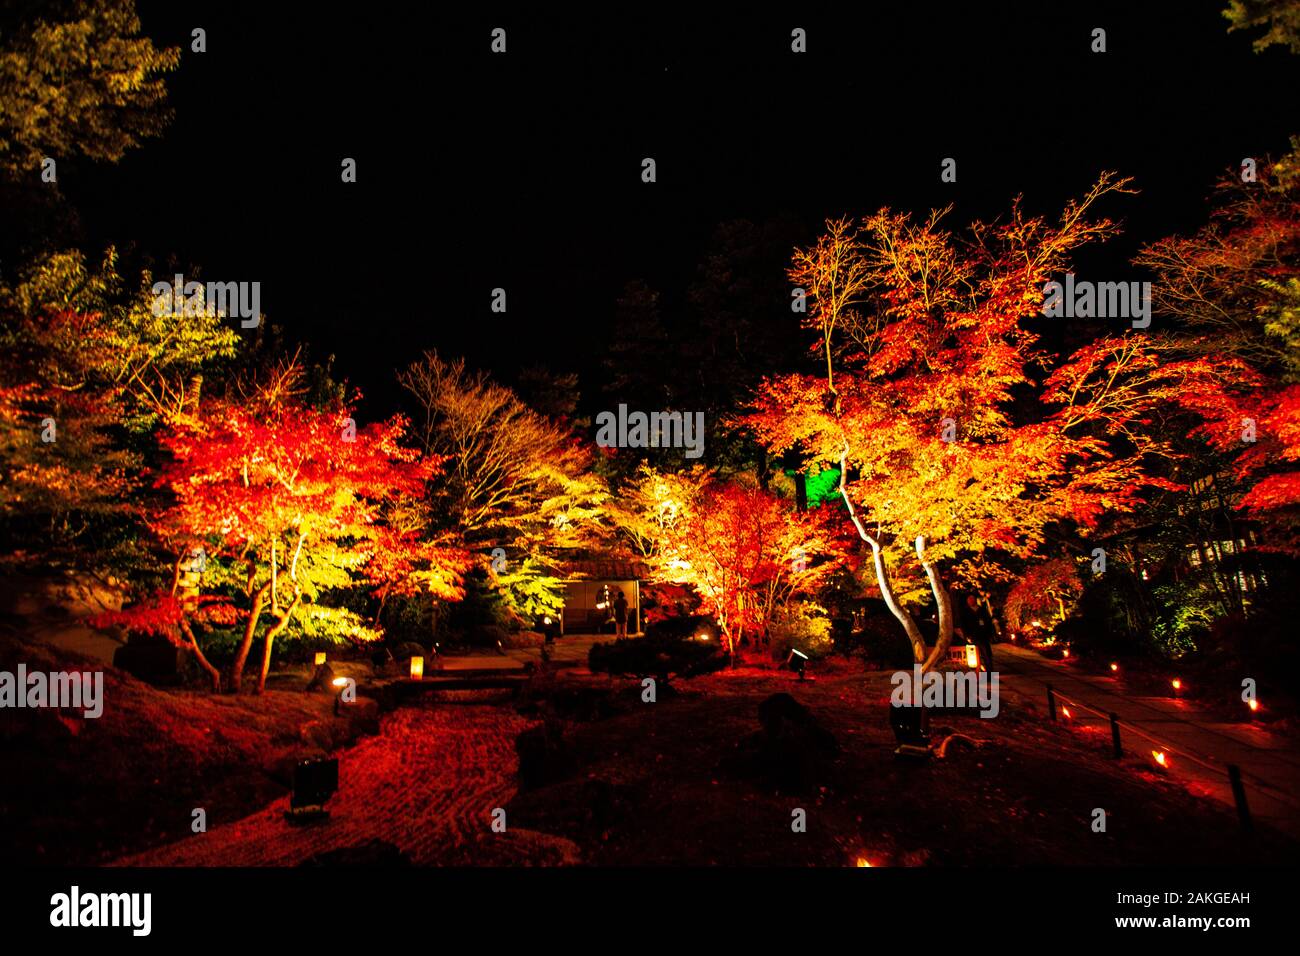 Kyoto. Nächtliche Beleuchtung in der Saison Kōyō" (Herbstlaub) Im Herbst wird der japanische Wald in leuchtenden Rot- und Orangentönen Dargestellt Stockfoto